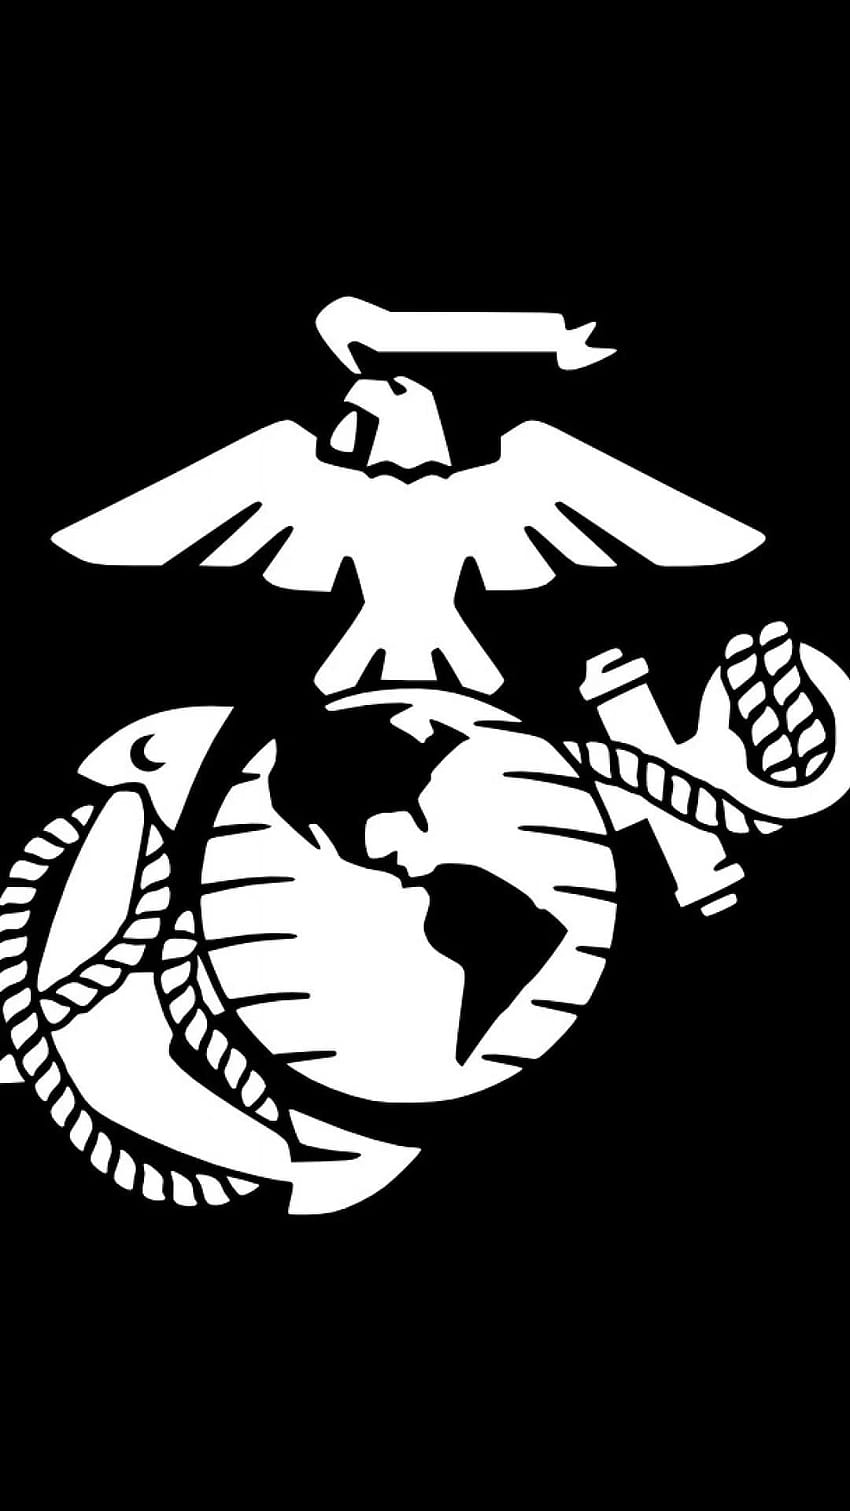 USMC Daha fazlasını keşfedin Amerikan Ordusu, Silahlı Kuvvetler, Deniz Piyadeleri, Birleşik Devletler Deniz Piyadeleri, Birleşik Devletler Deniz Piyadeleri wal…, deniz logosu HD telefon duvar kağıdı